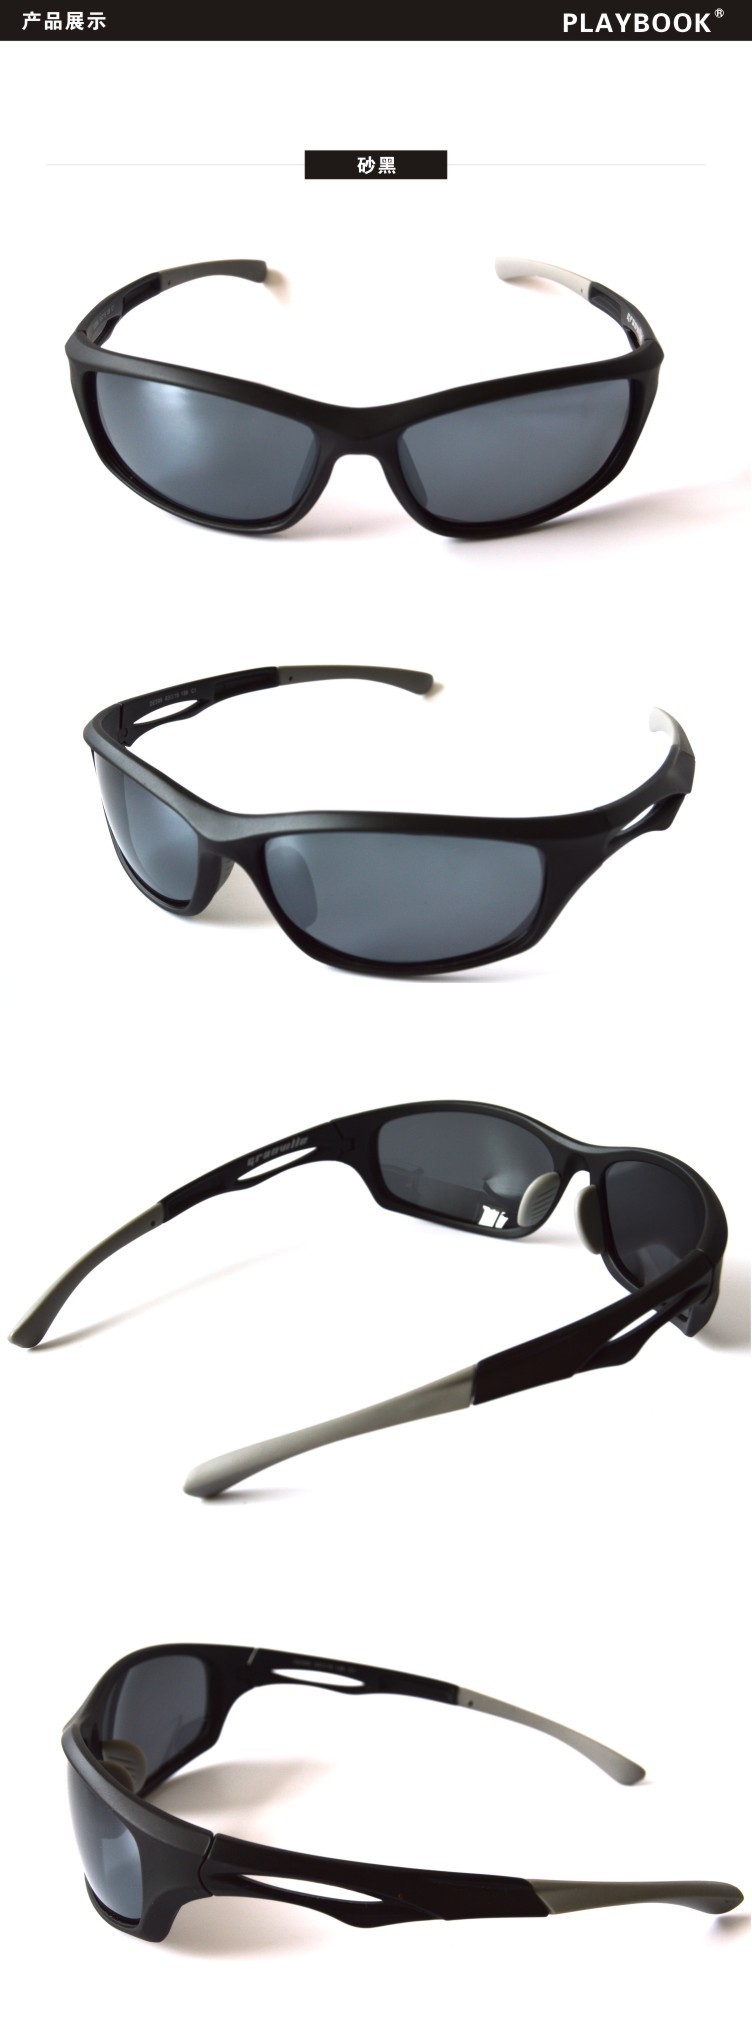 外贸速卖通爆款偏光太阳镜 运动眼镜 户外护目镜 骑行眼镜示例图3